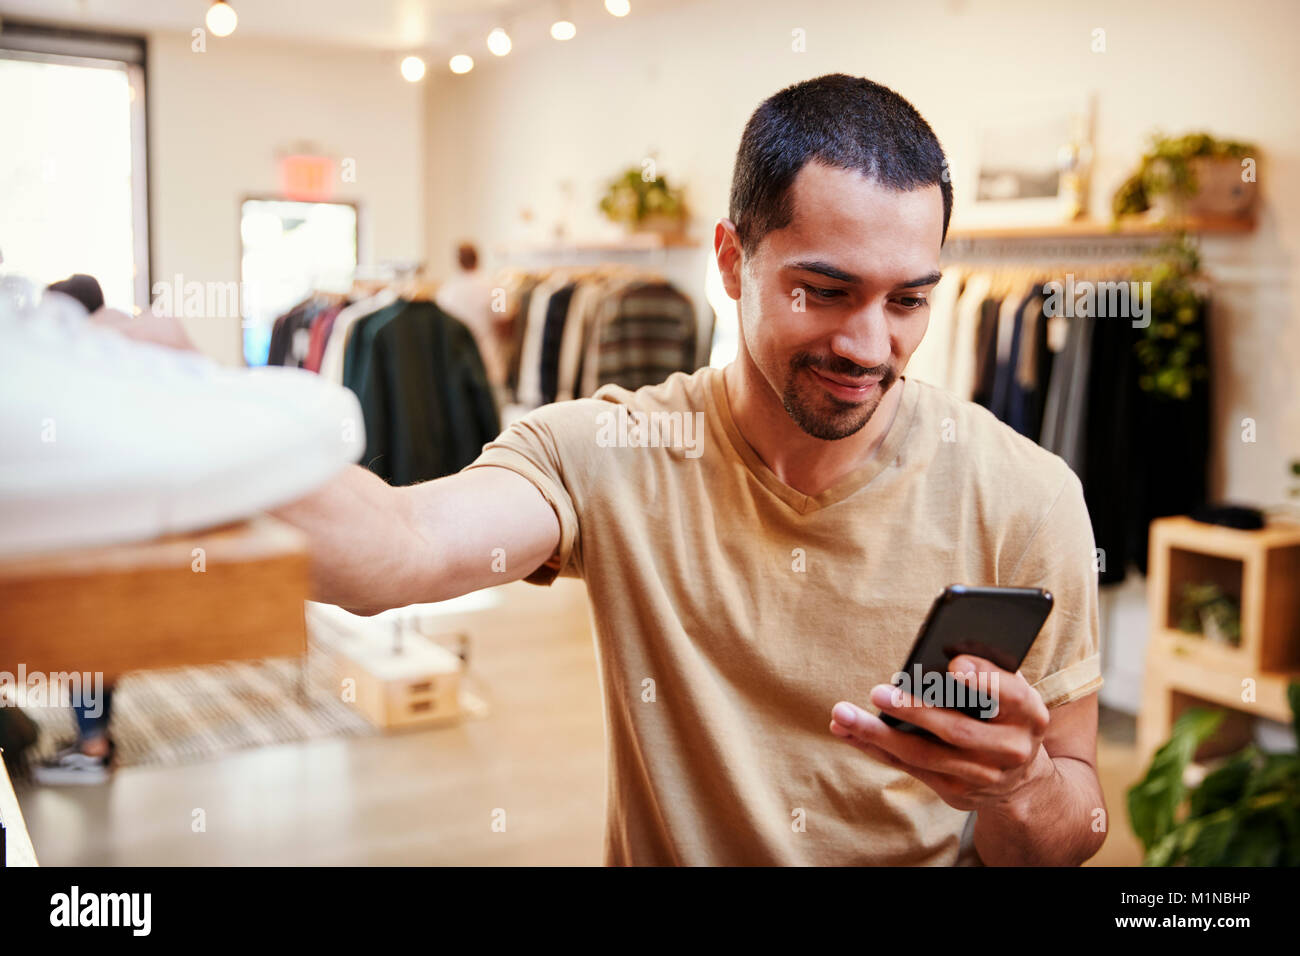 Smiling Hispanic man using smartphone dans un magasin de vêtements Banque D'Images